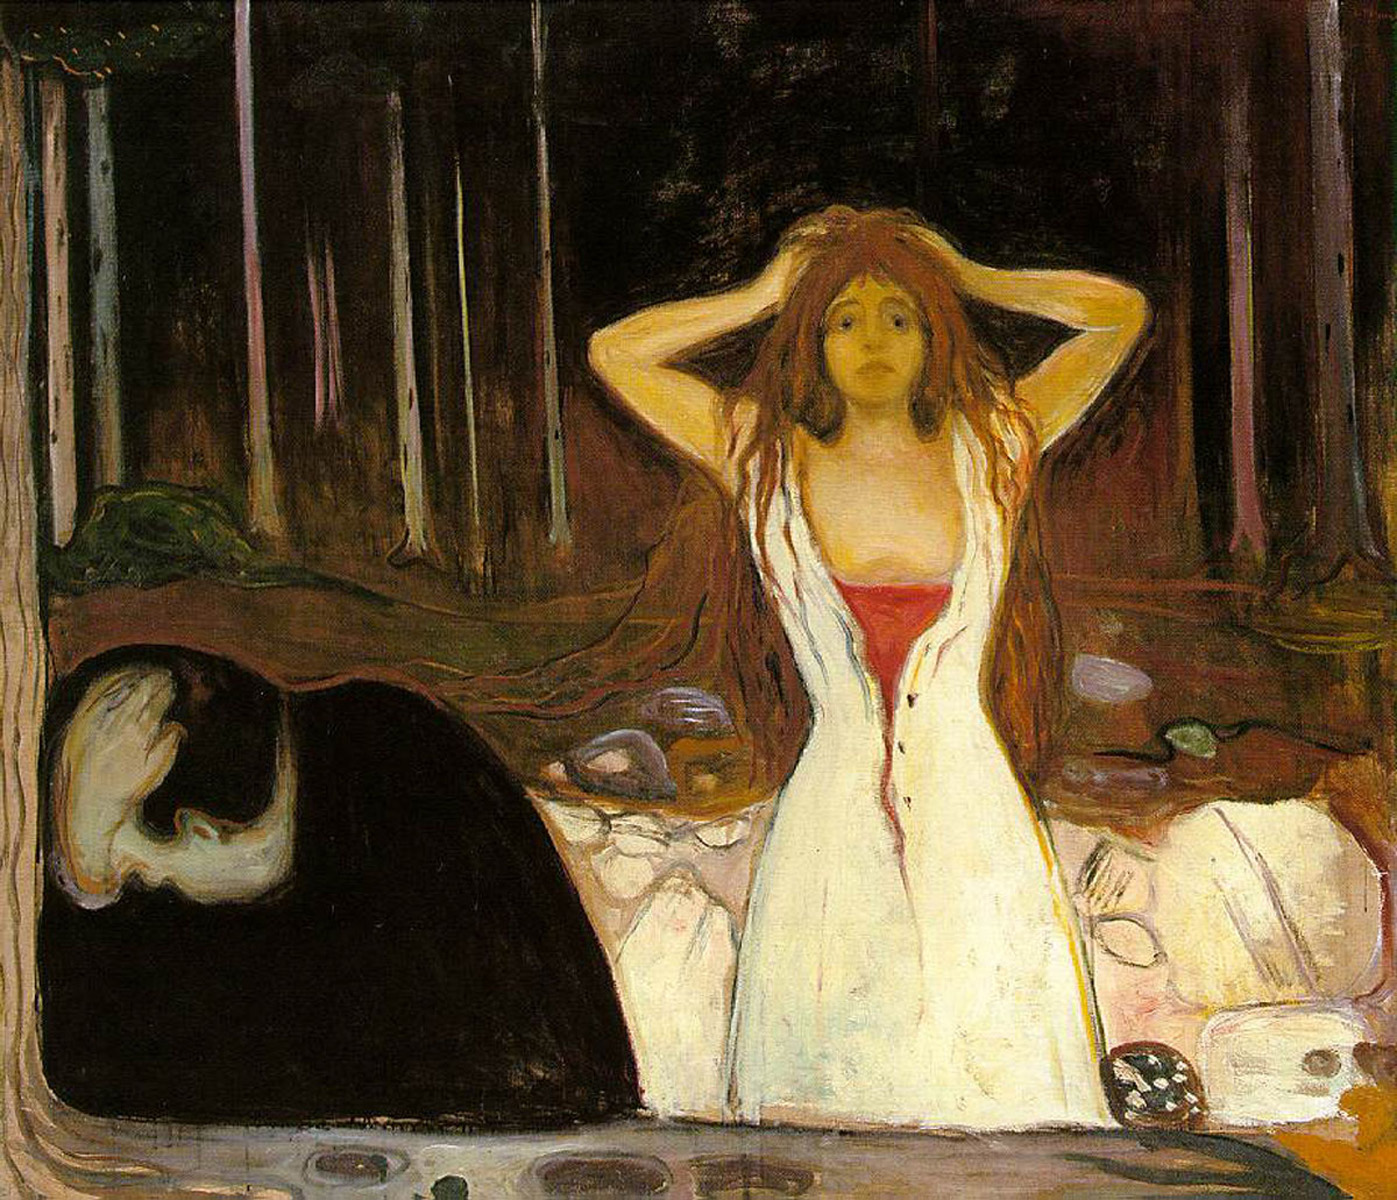 Cenușă by Edvard Munch - 1895 - 120.5 x 141 cm 